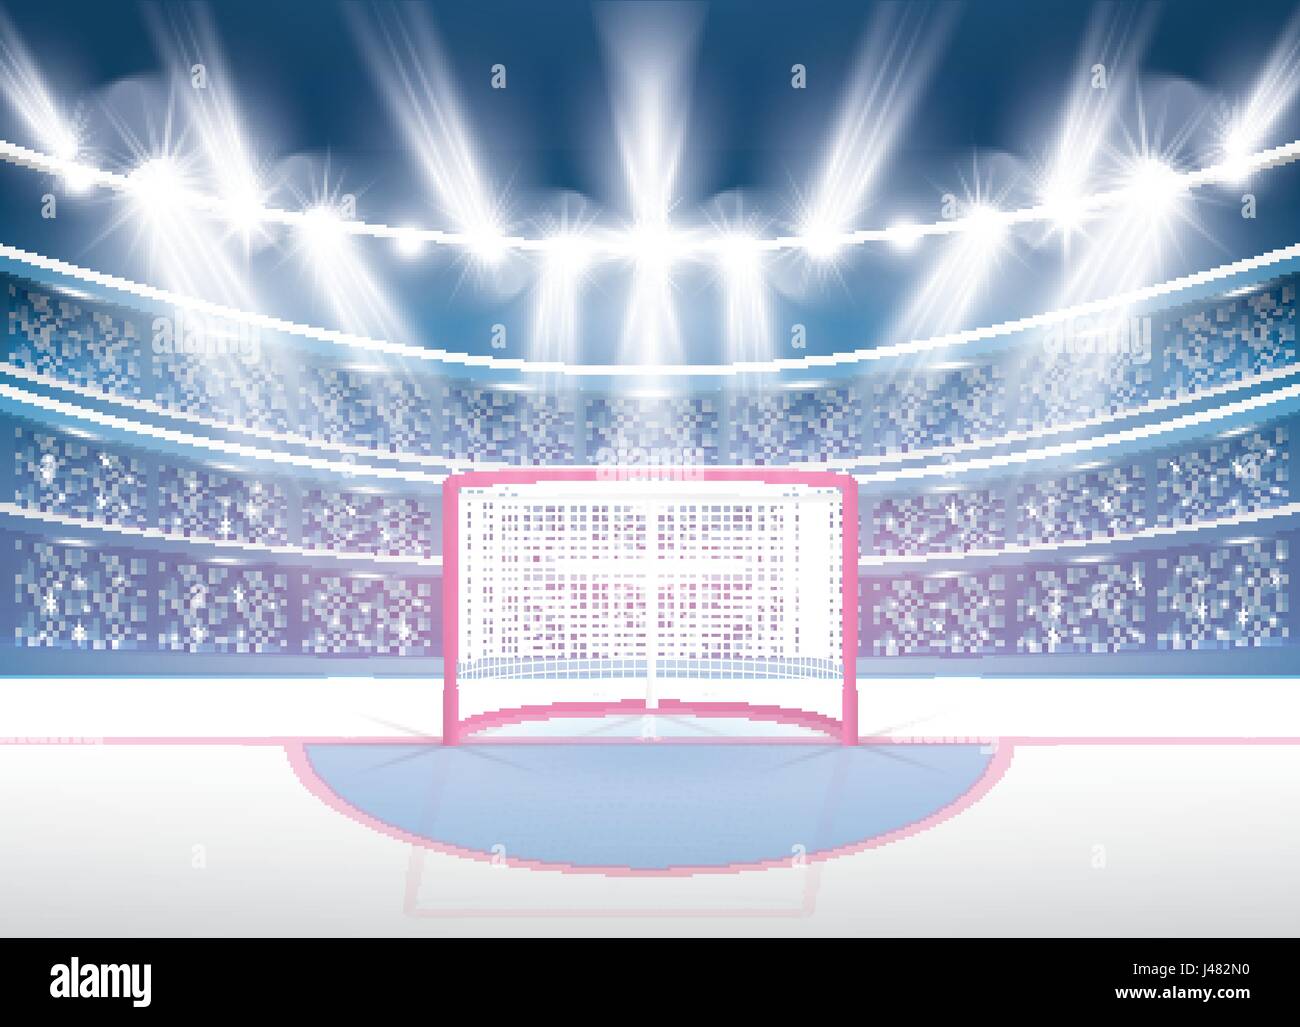 Eishockey-Stadion mit Strahler und roten Tor. Vektor-Illustration. Stock Vektor